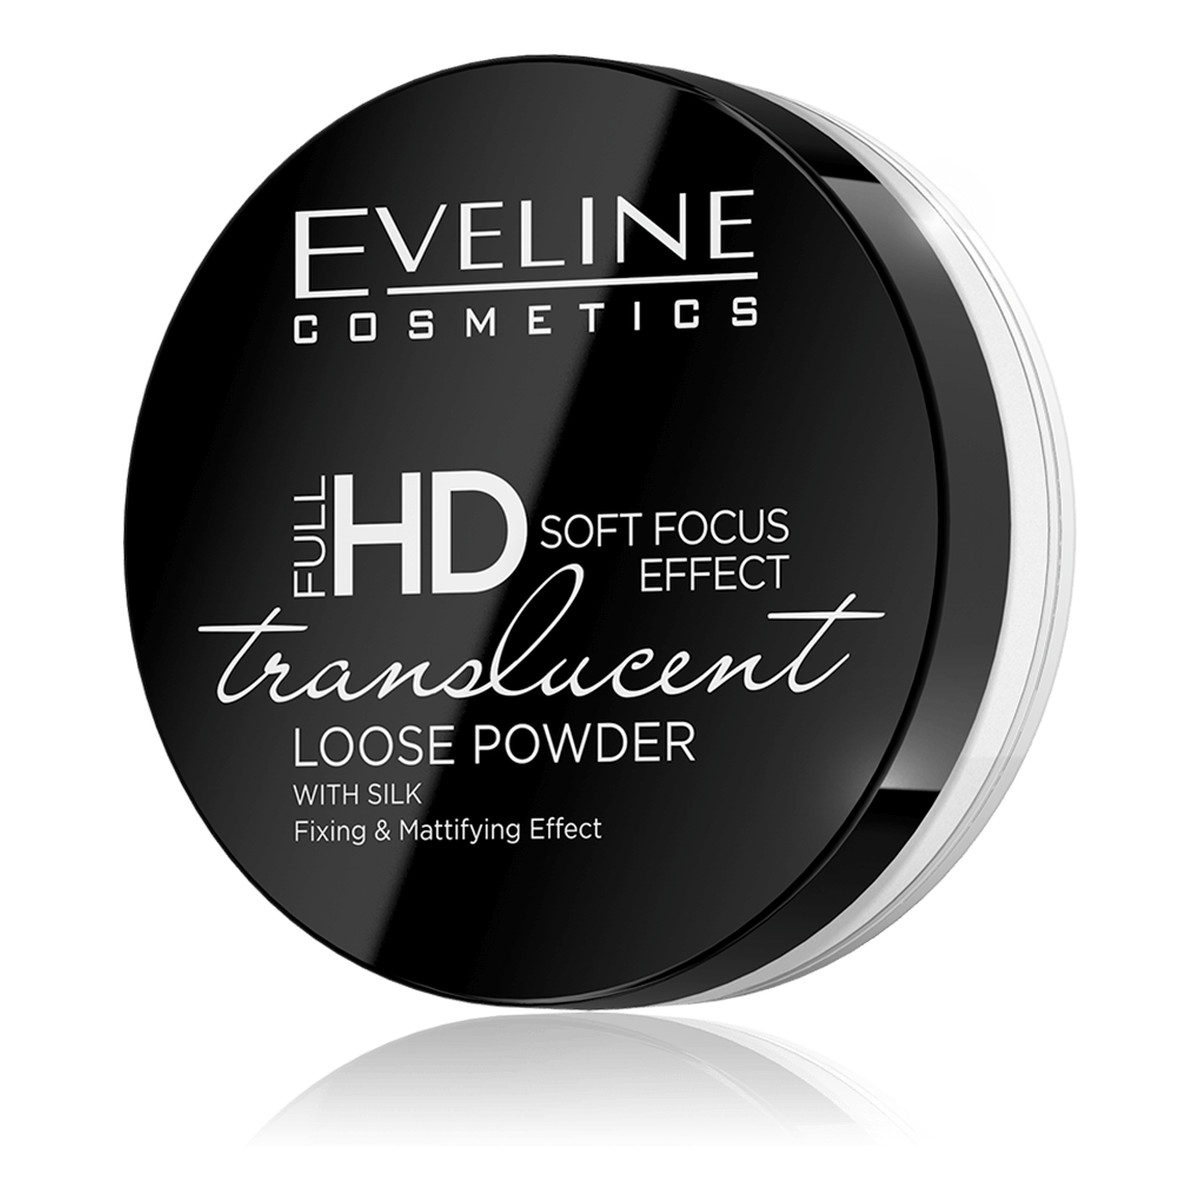 Eveline Full HD utrwalający & matujący puder sypki z jedwabiem 6g